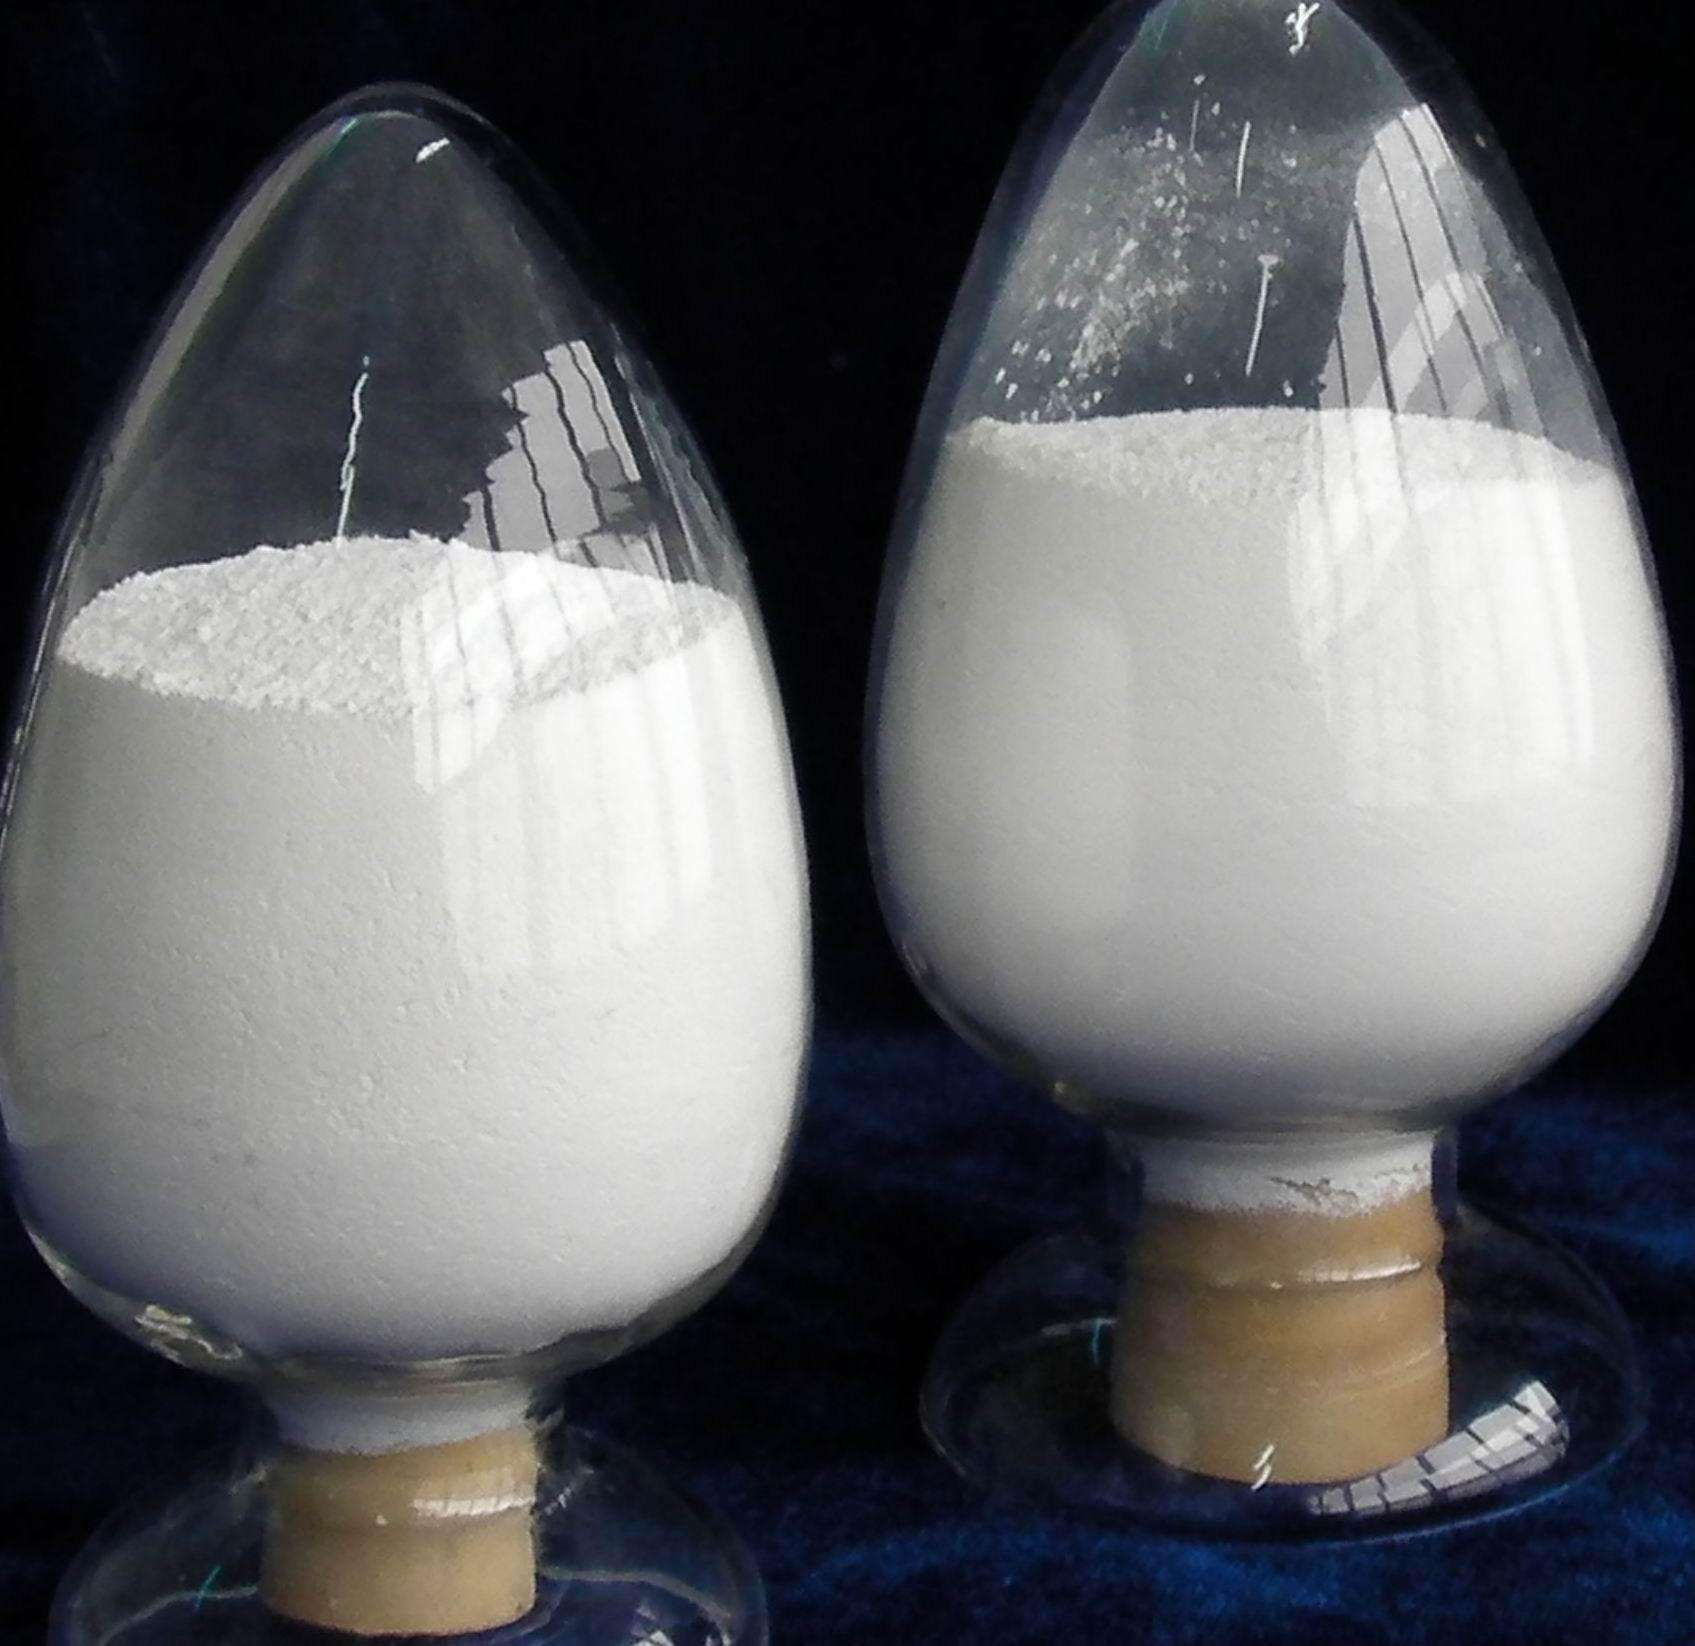  Modified calcium carbonate